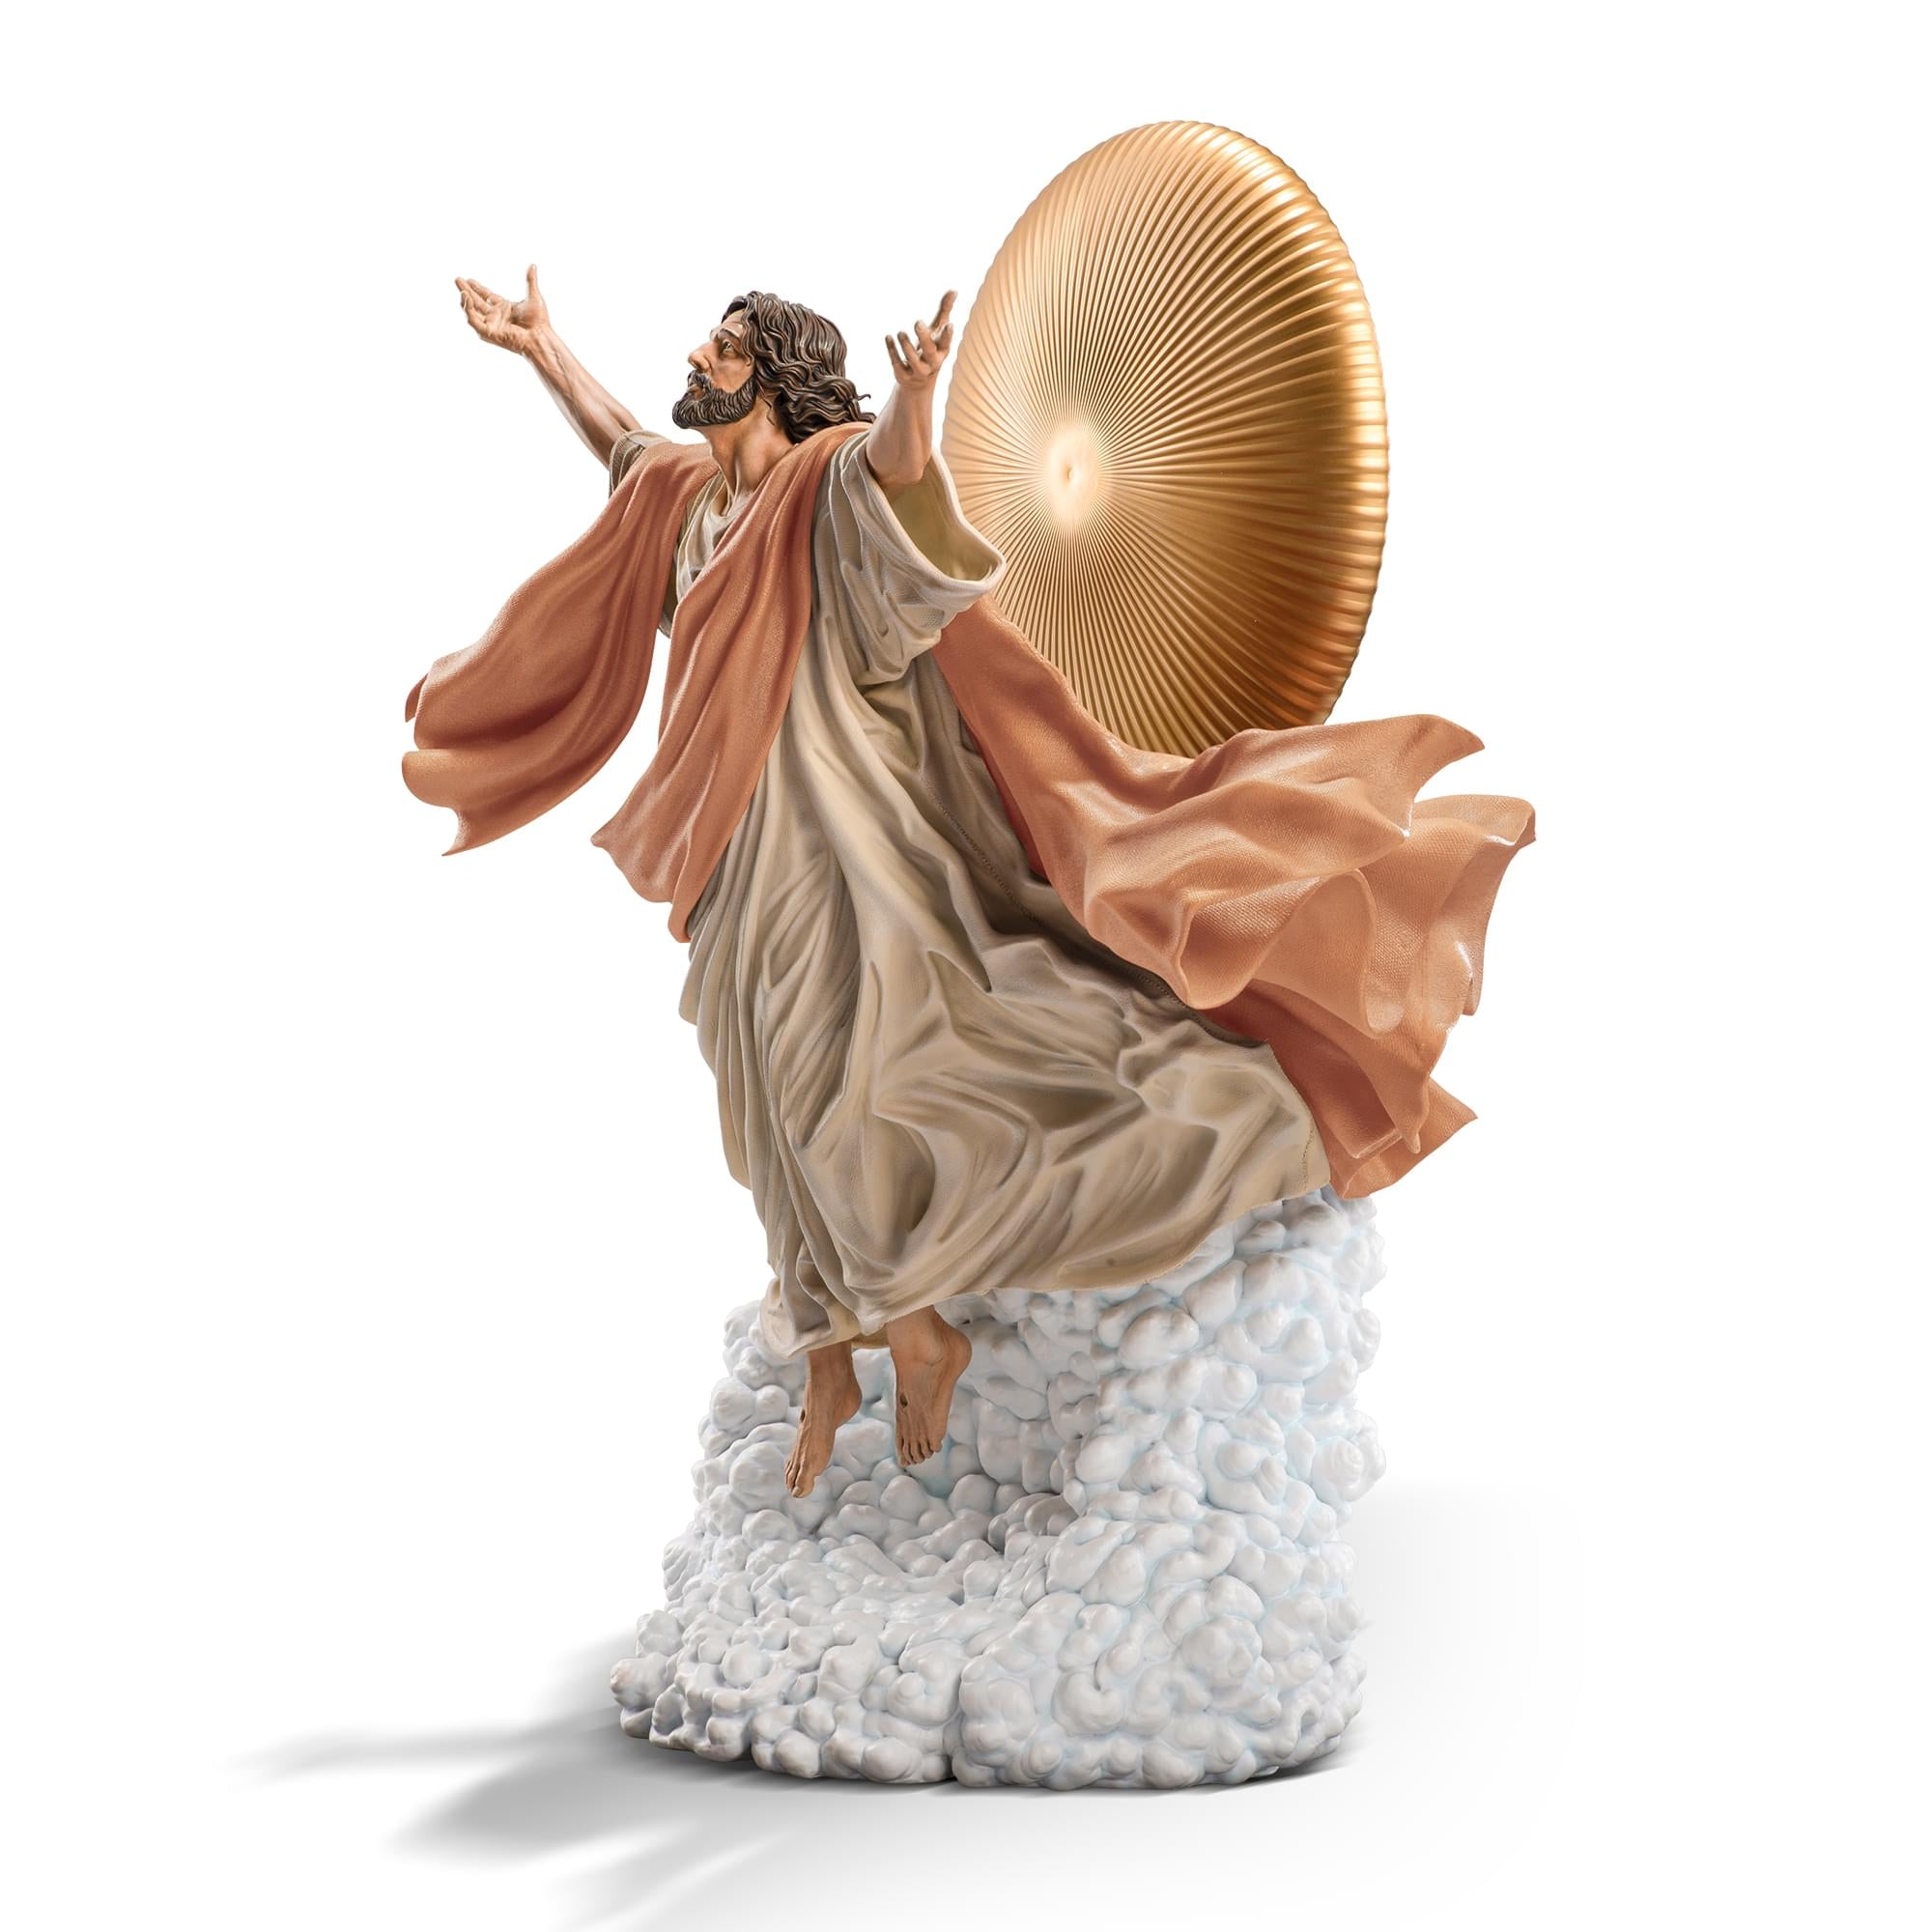 Ascension of Jesus Christ 27-Inch Premium Statue | 1:4 Scale Tan Robe Edition